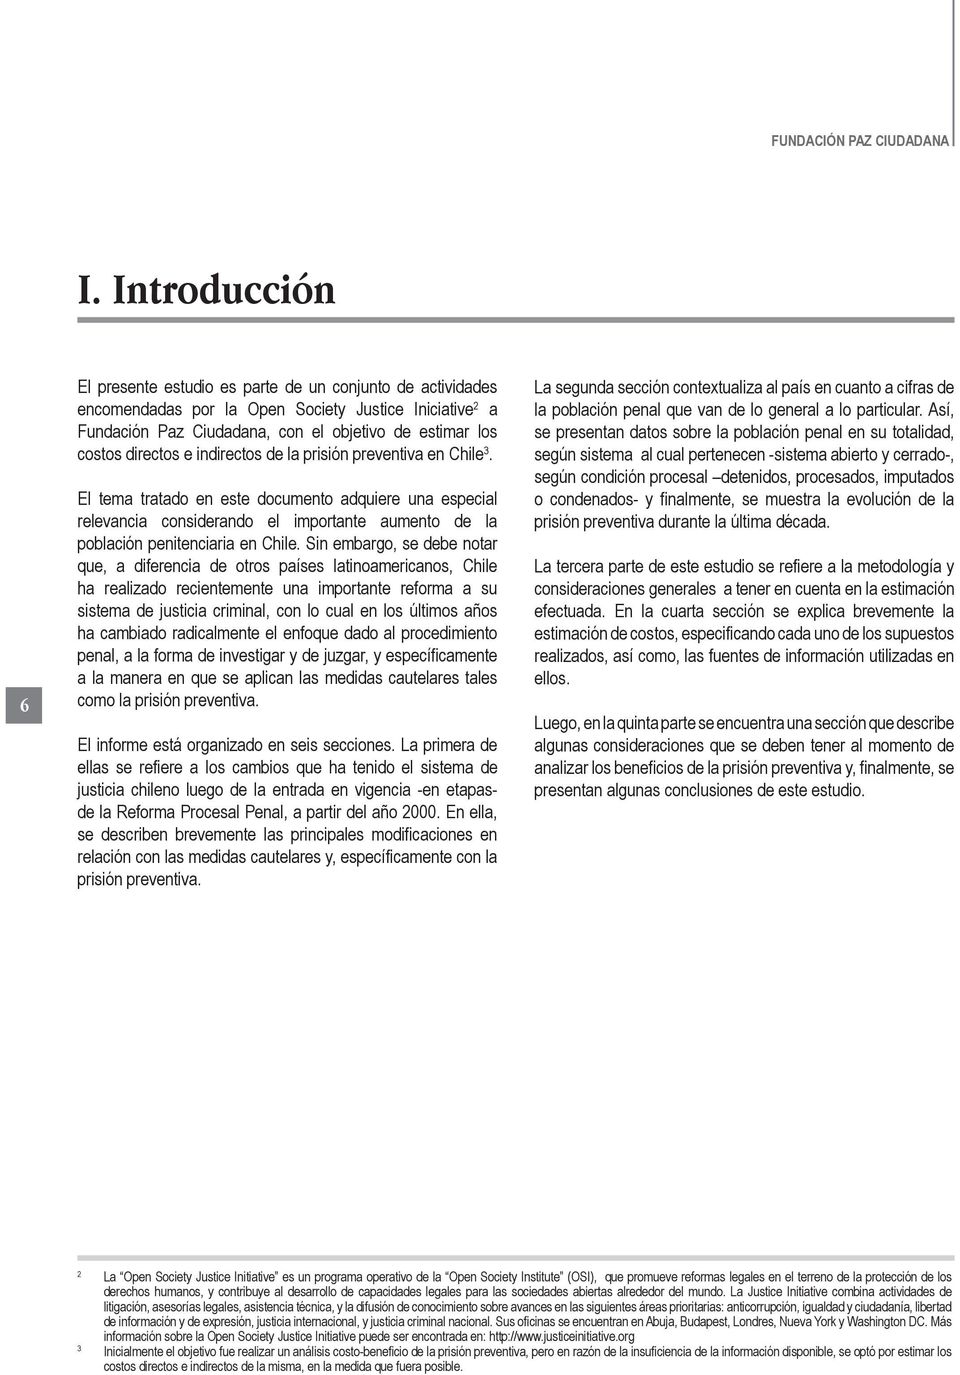 directos e indirectos de la prisión preventiva en Chile 3. El tema tratado en este documento adquiere una especial relevancia considerando el importante aumento de la población penitenciaria en Chile.